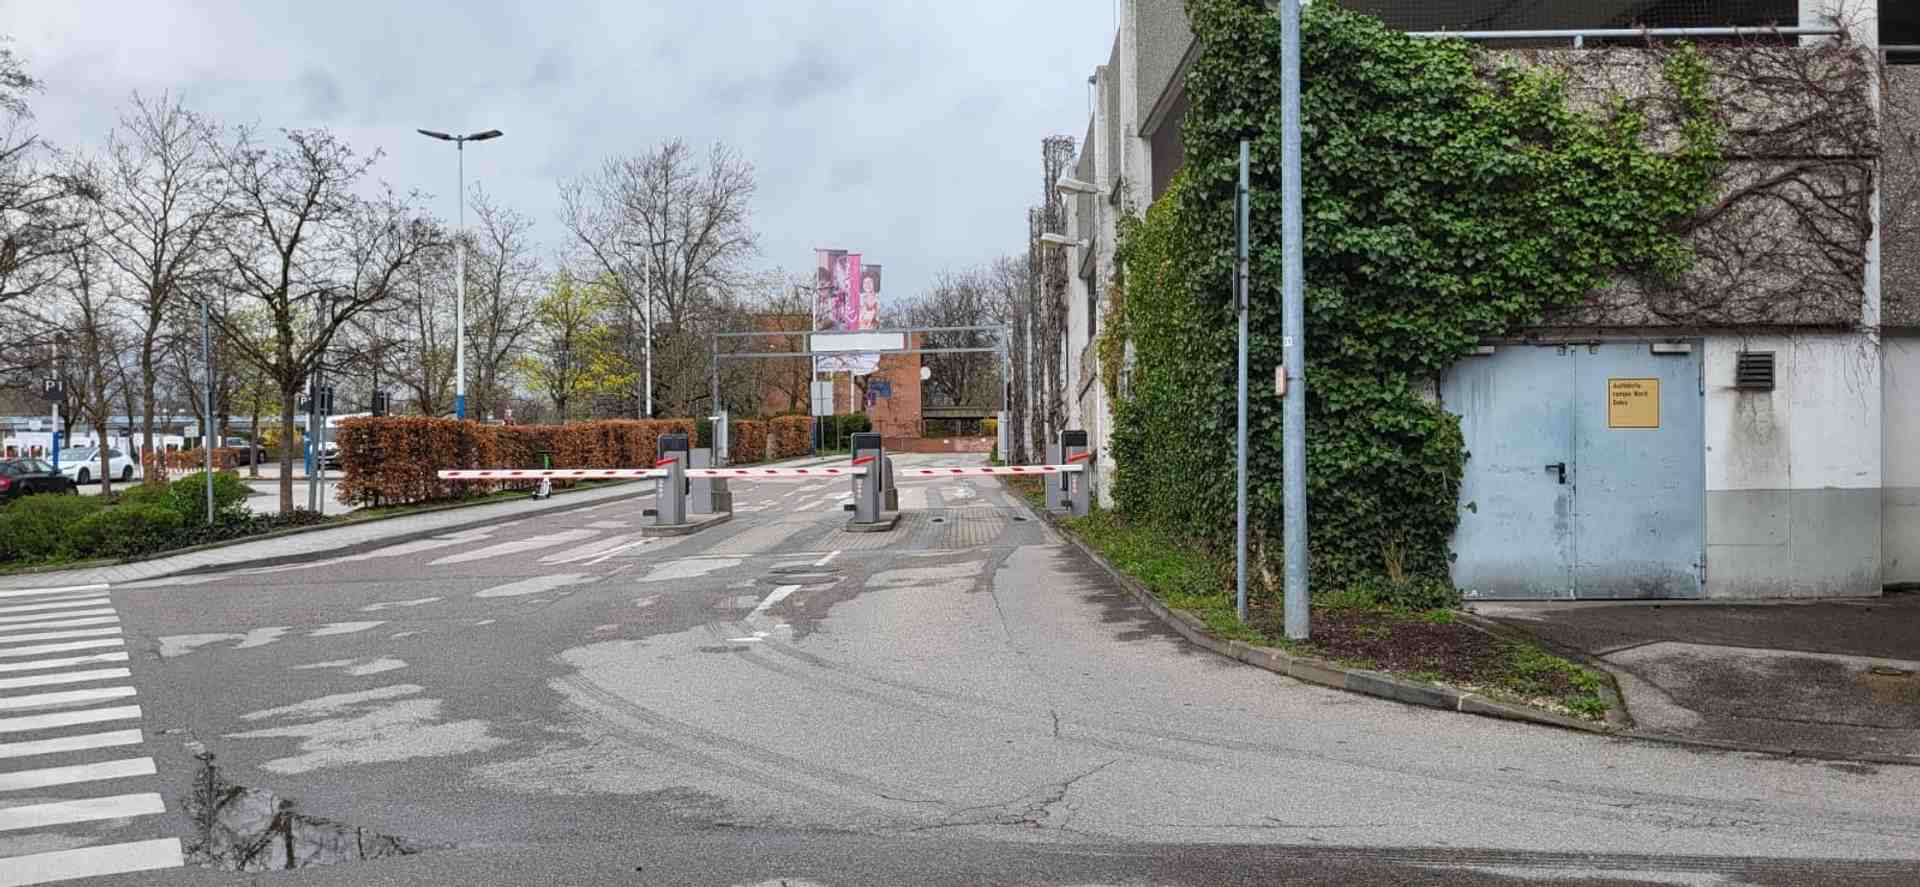 Parkplatz im Olympia Einkaufszentrum verfügbar! - Riesstraße, 80993 Munich - Photo 2 of 5